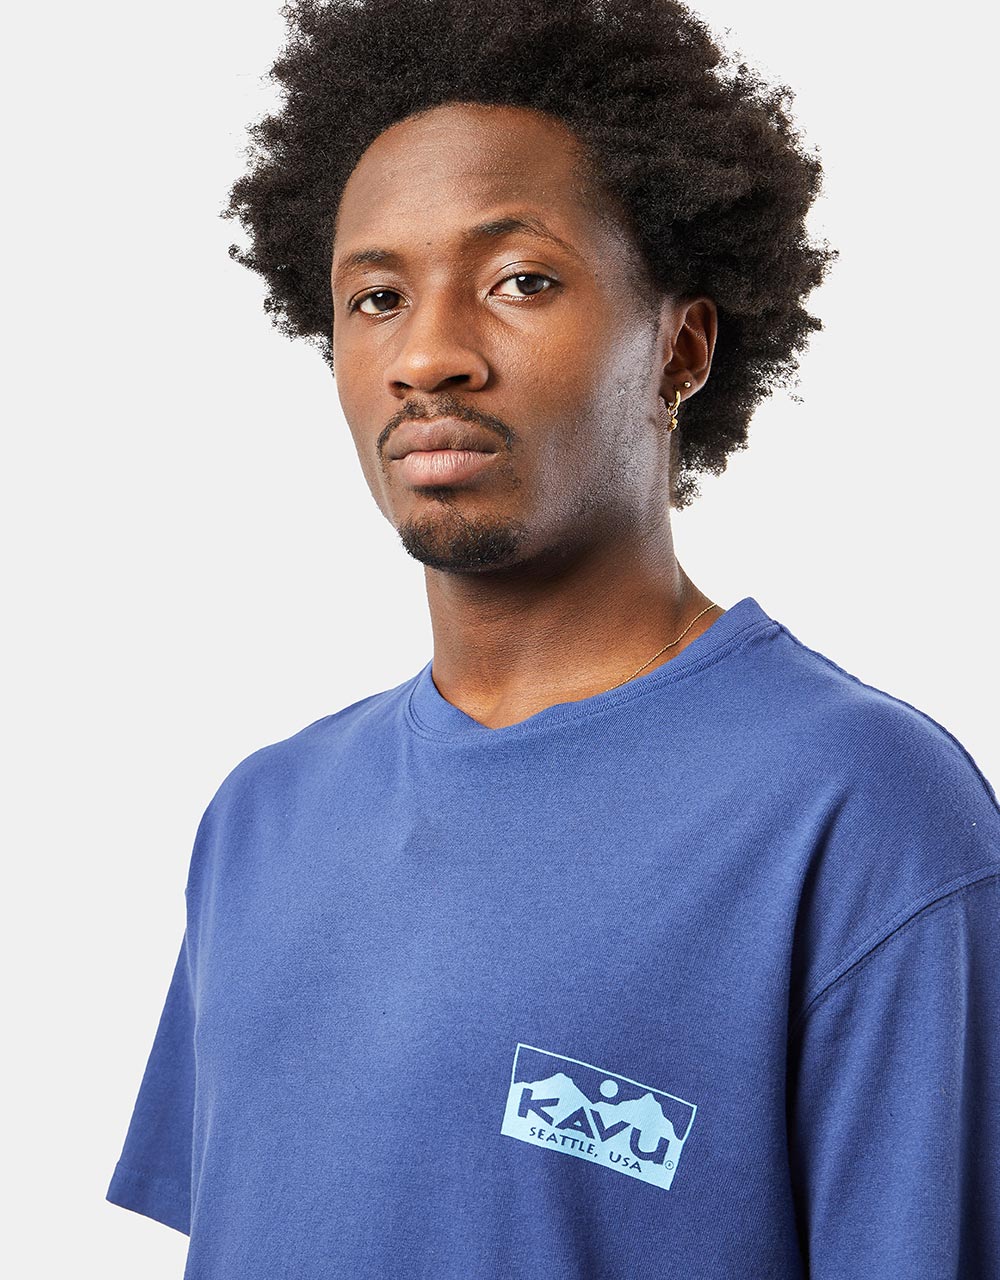 Kavu Floatboat T-Shirt - Medieval Blue